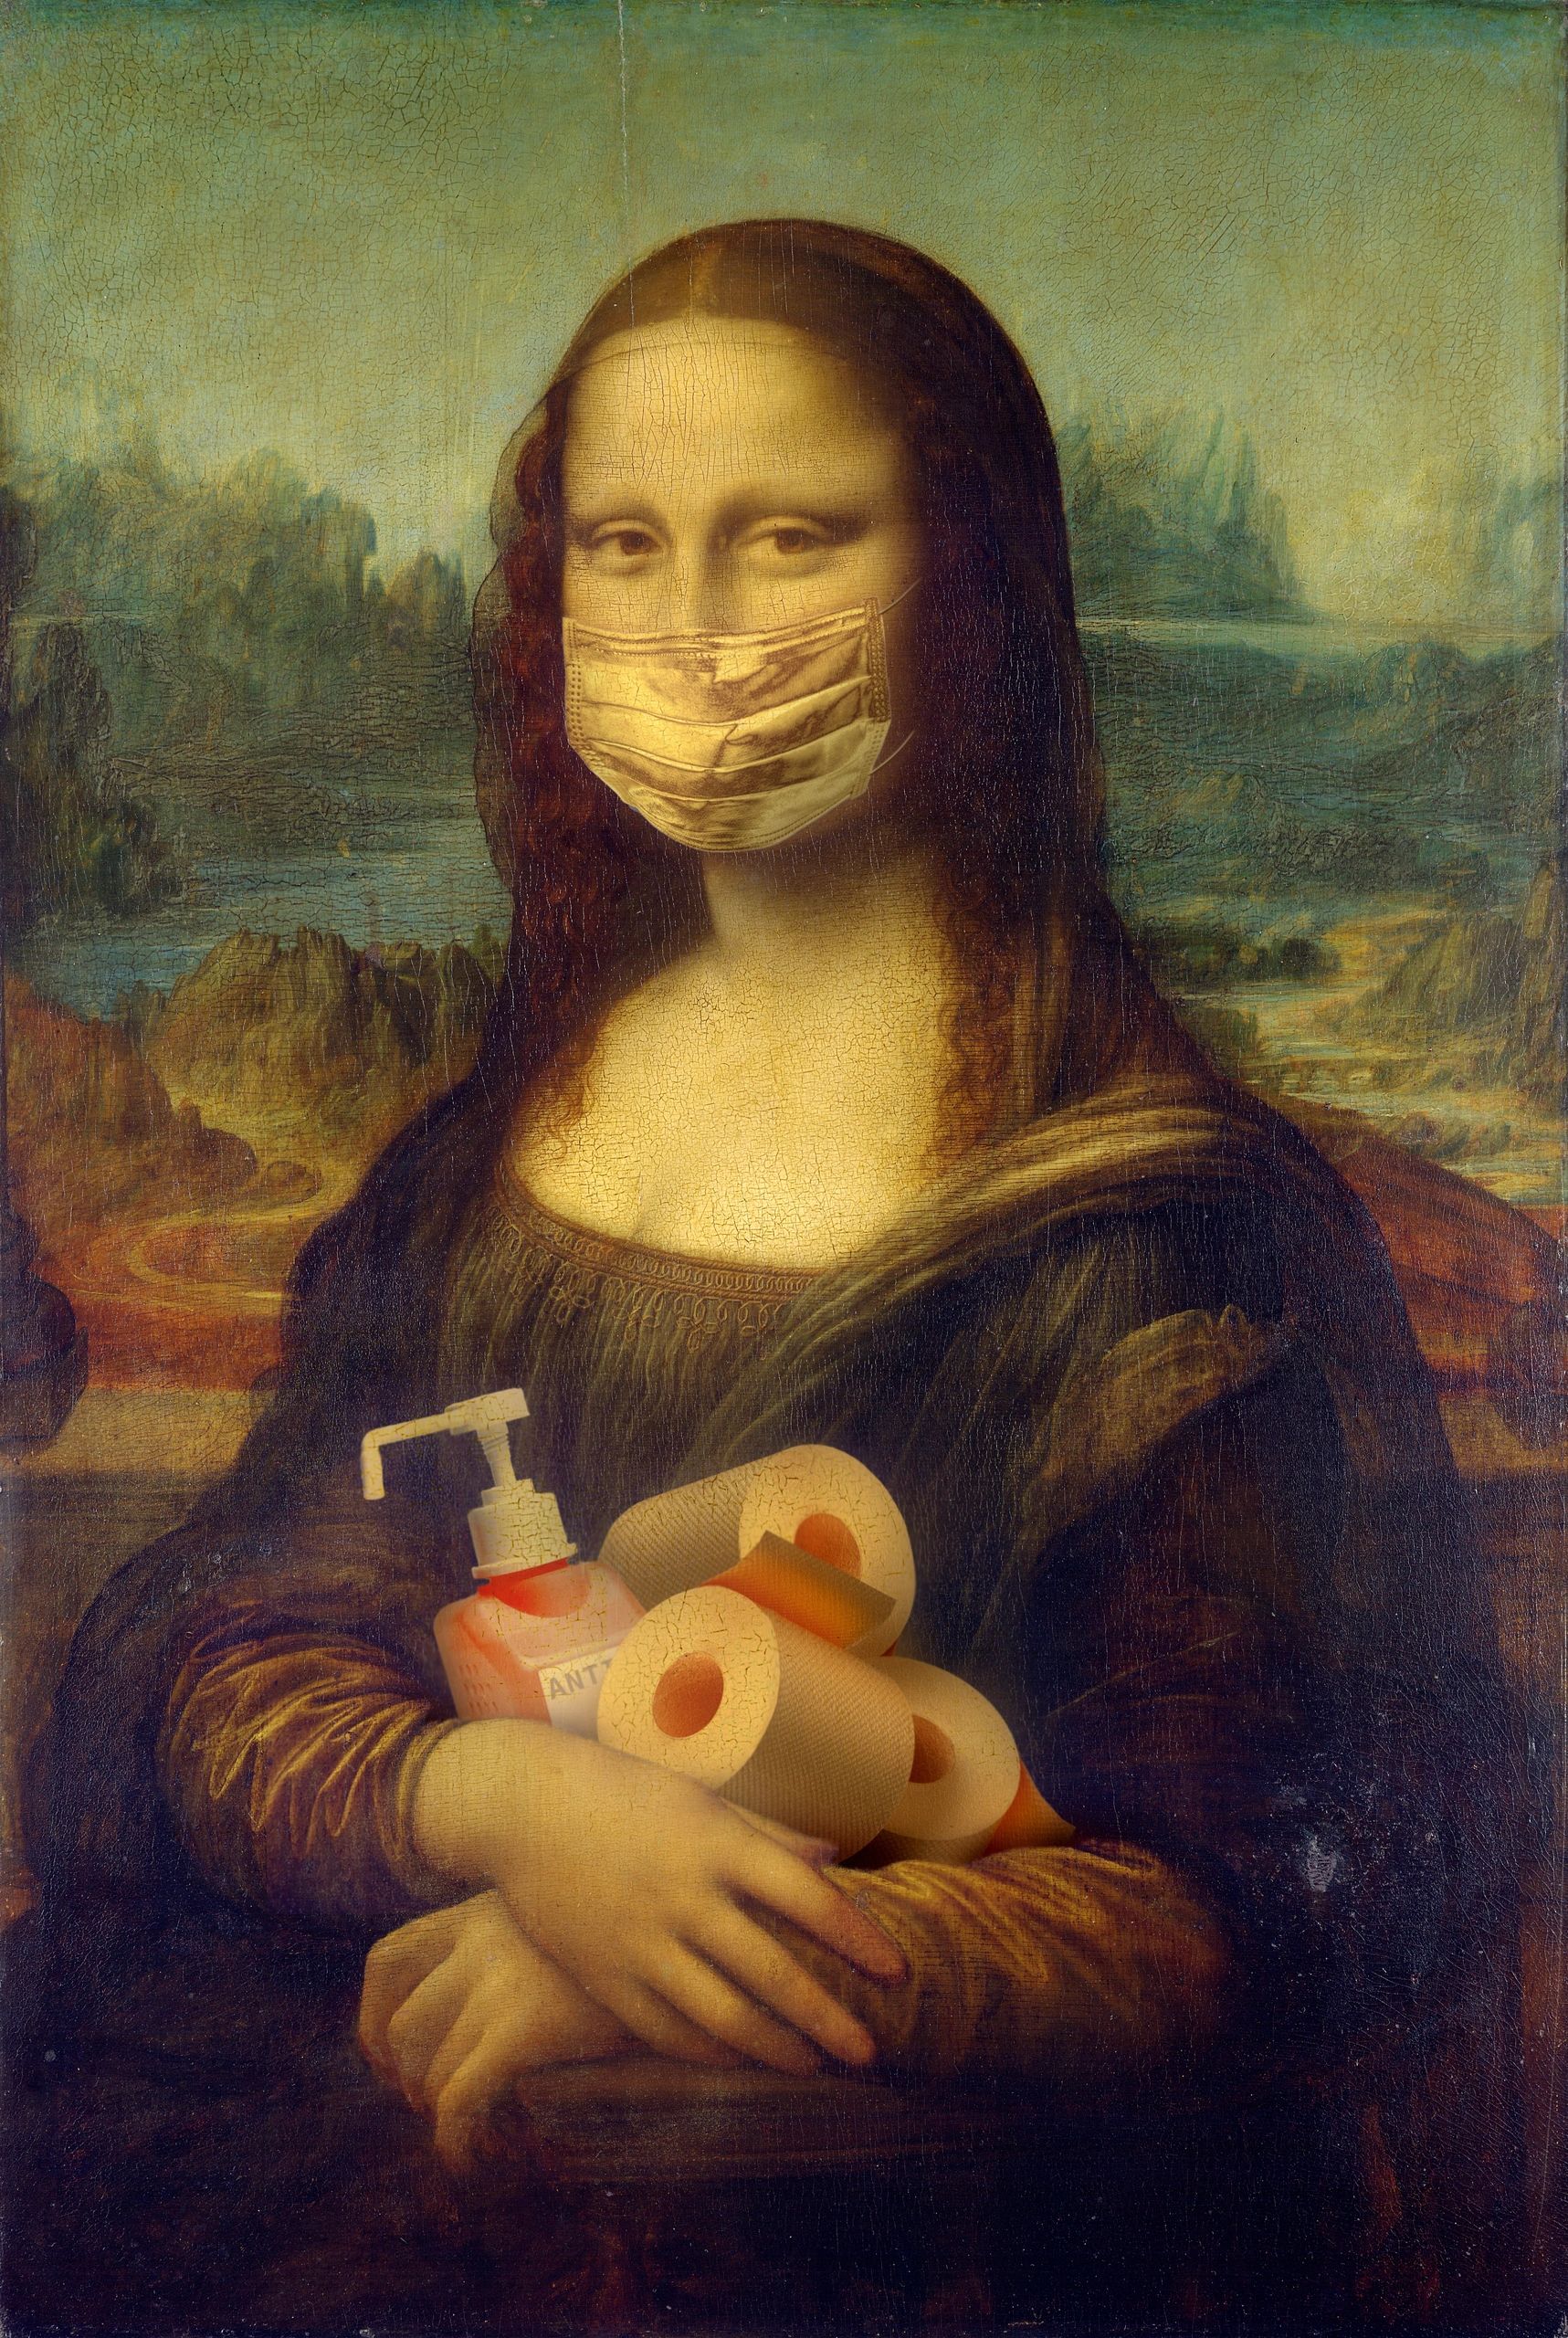 Covid-19, Mona Lisa, parody